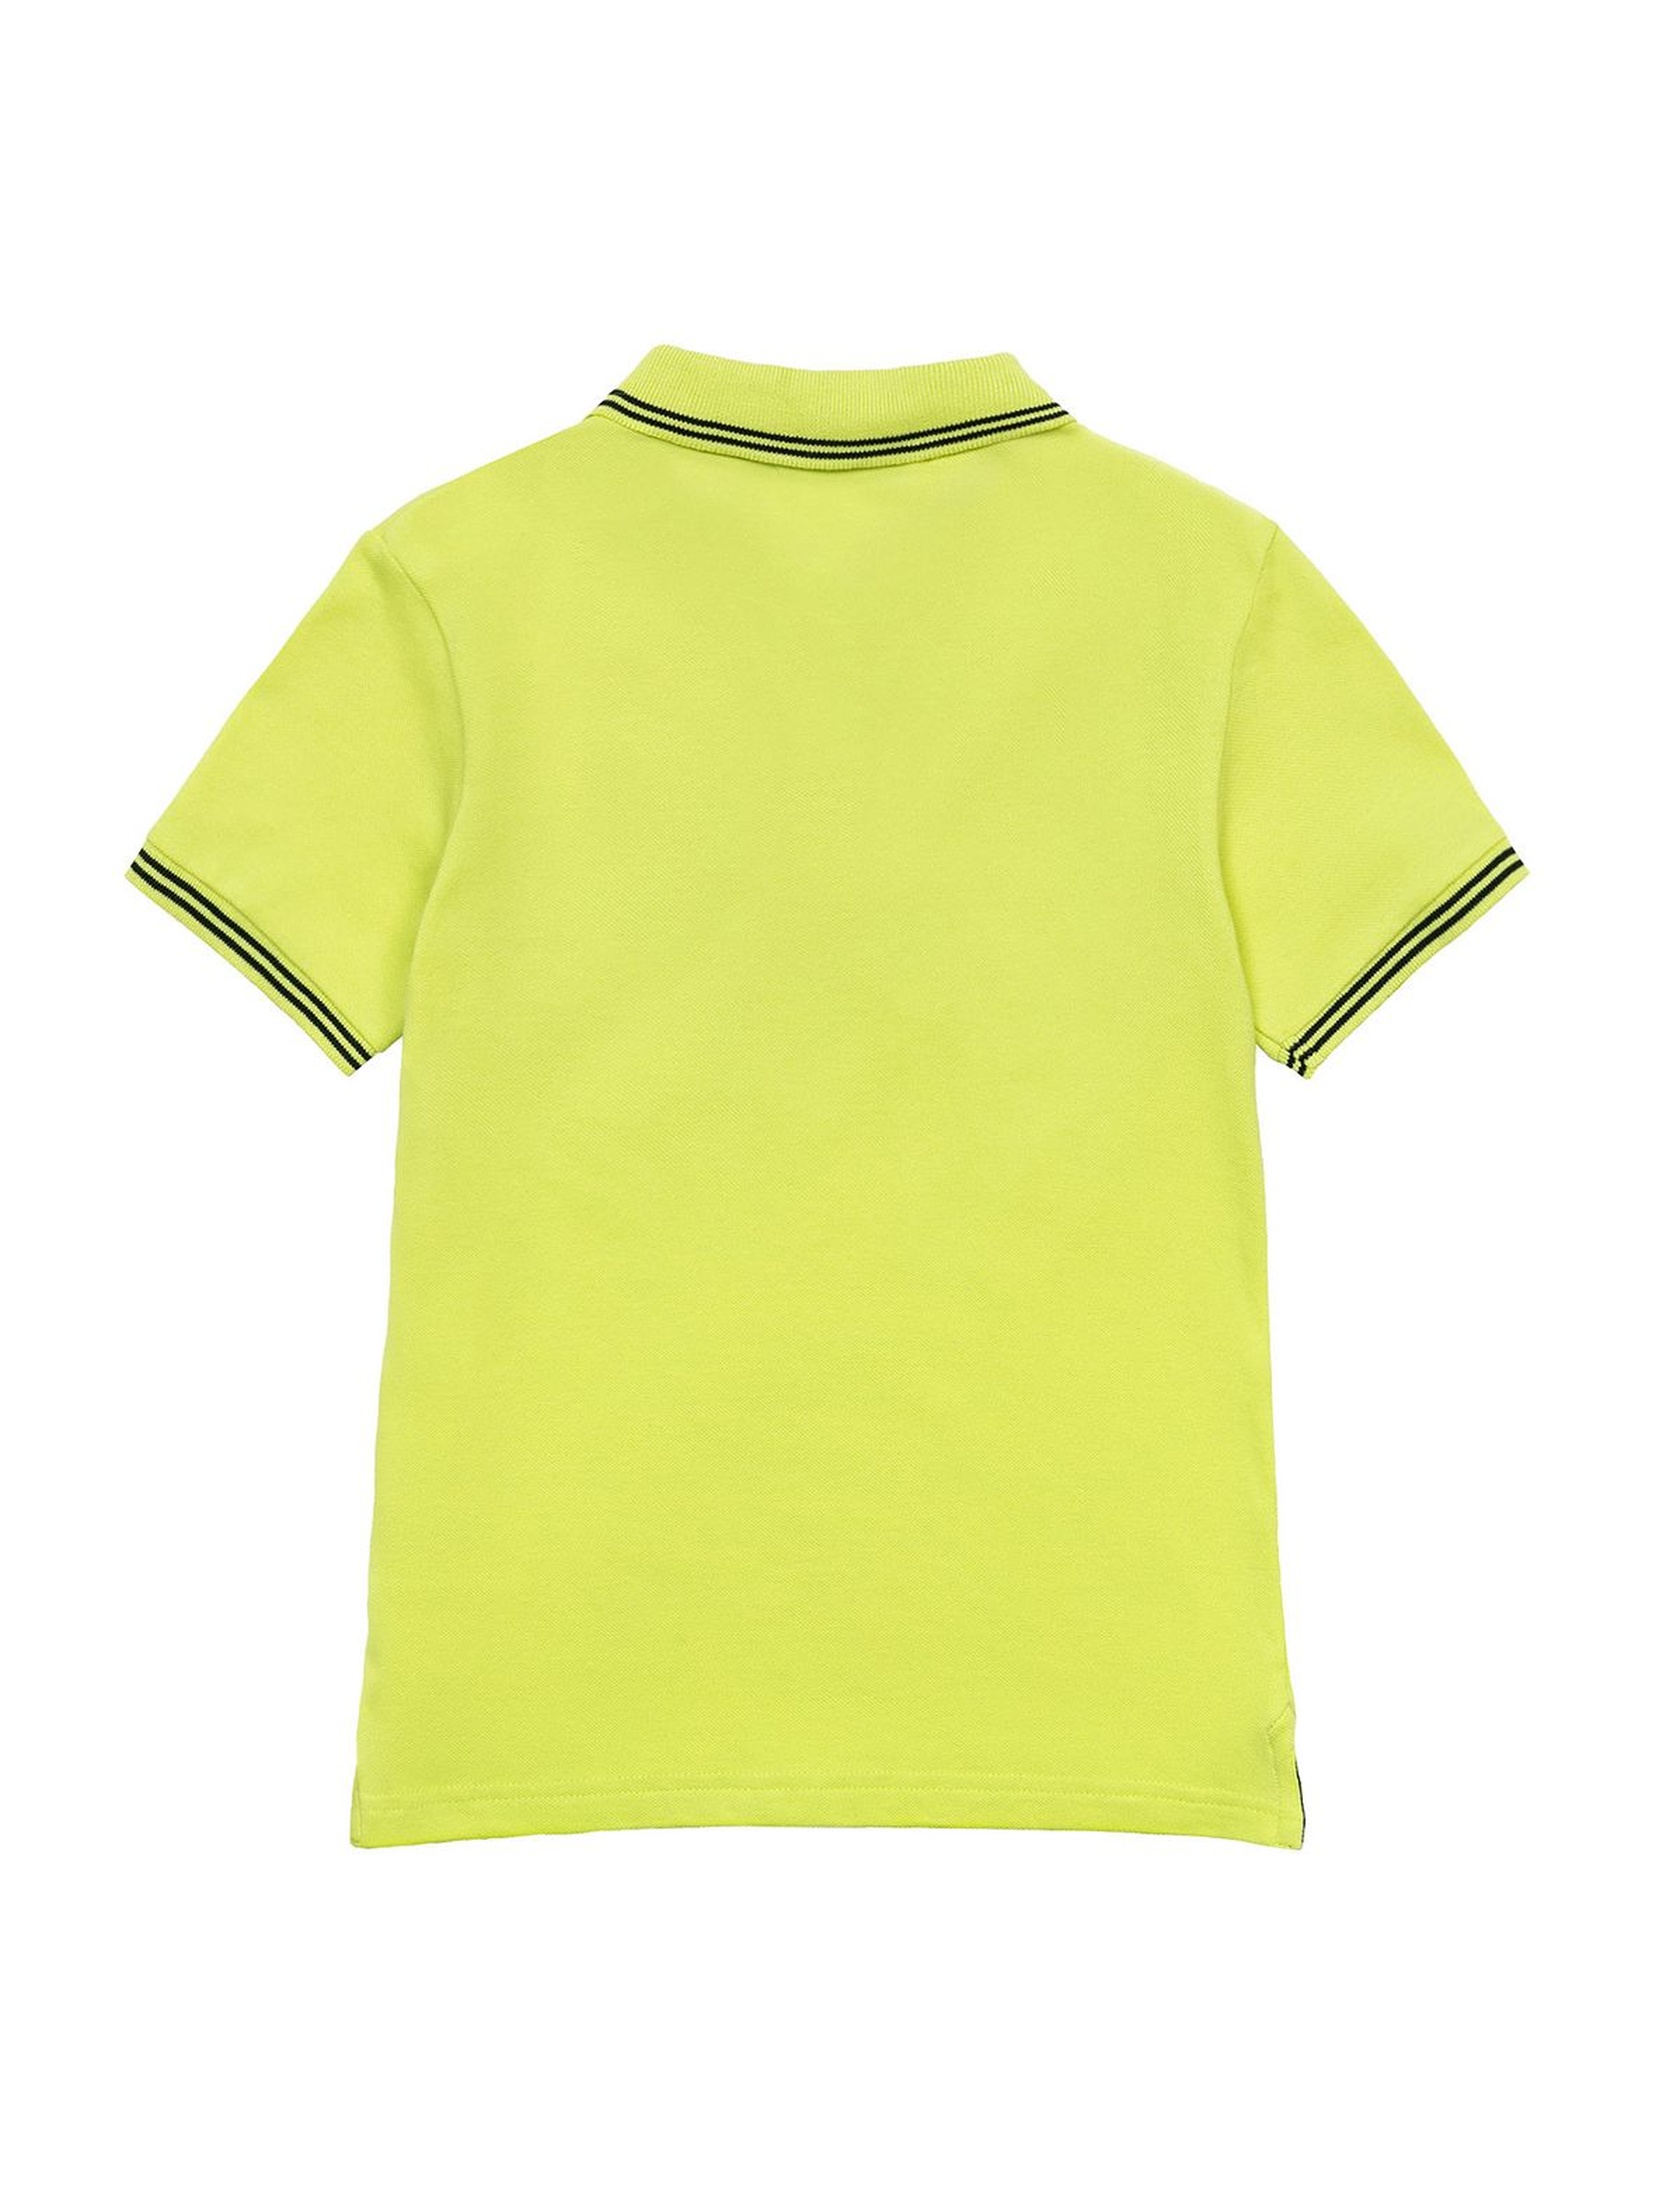 T-shirt niemowlęcy limonka polo